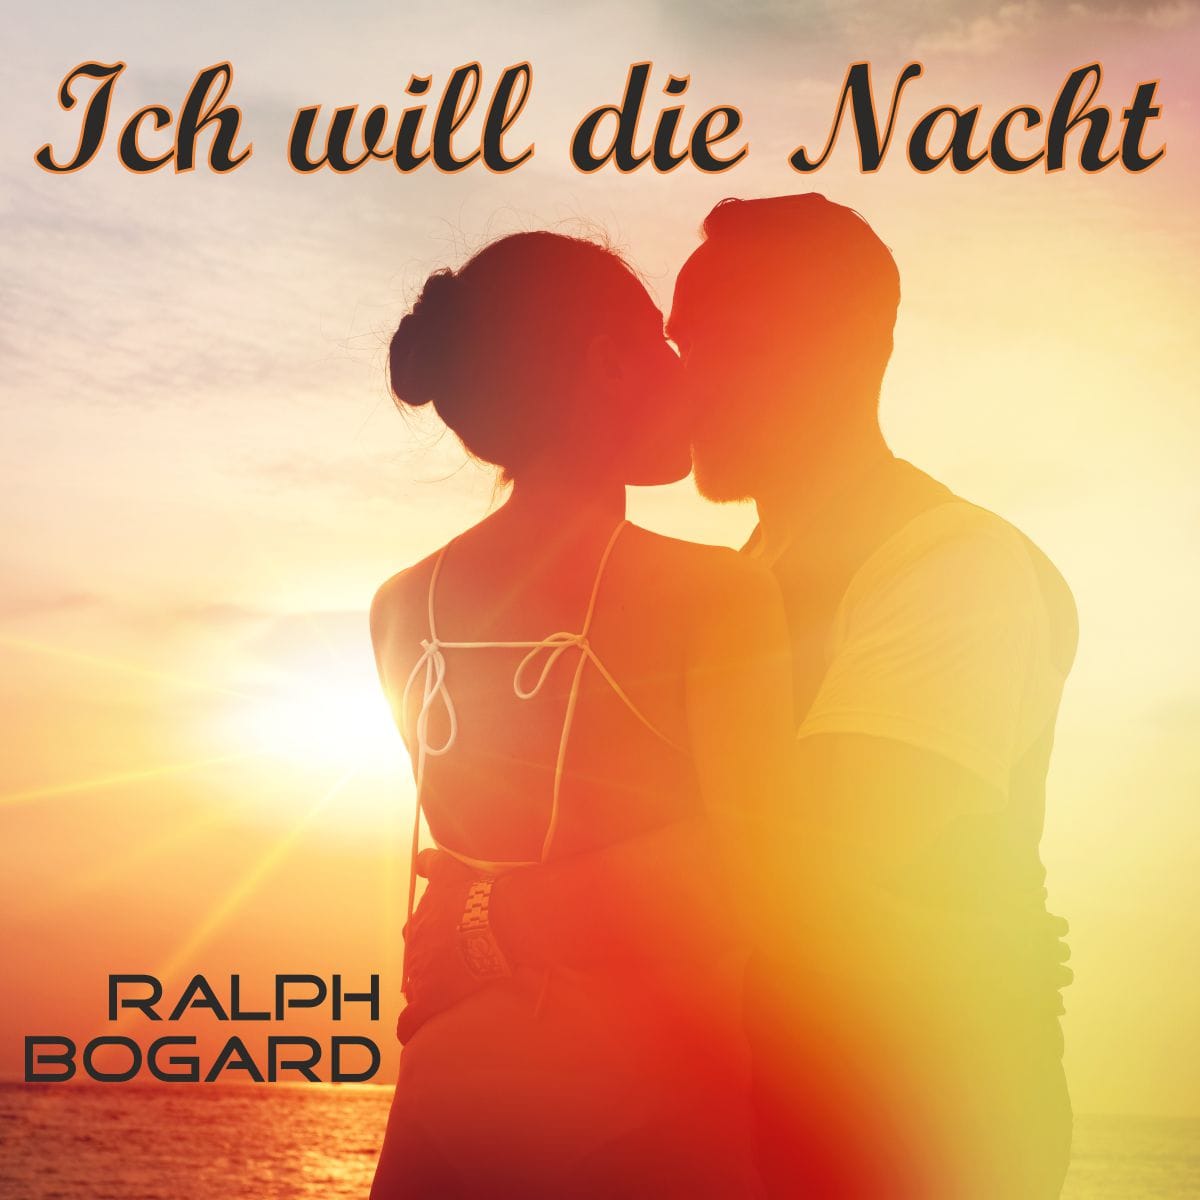 Ralph bogard - Ich will die Nacht - Cover.jpg